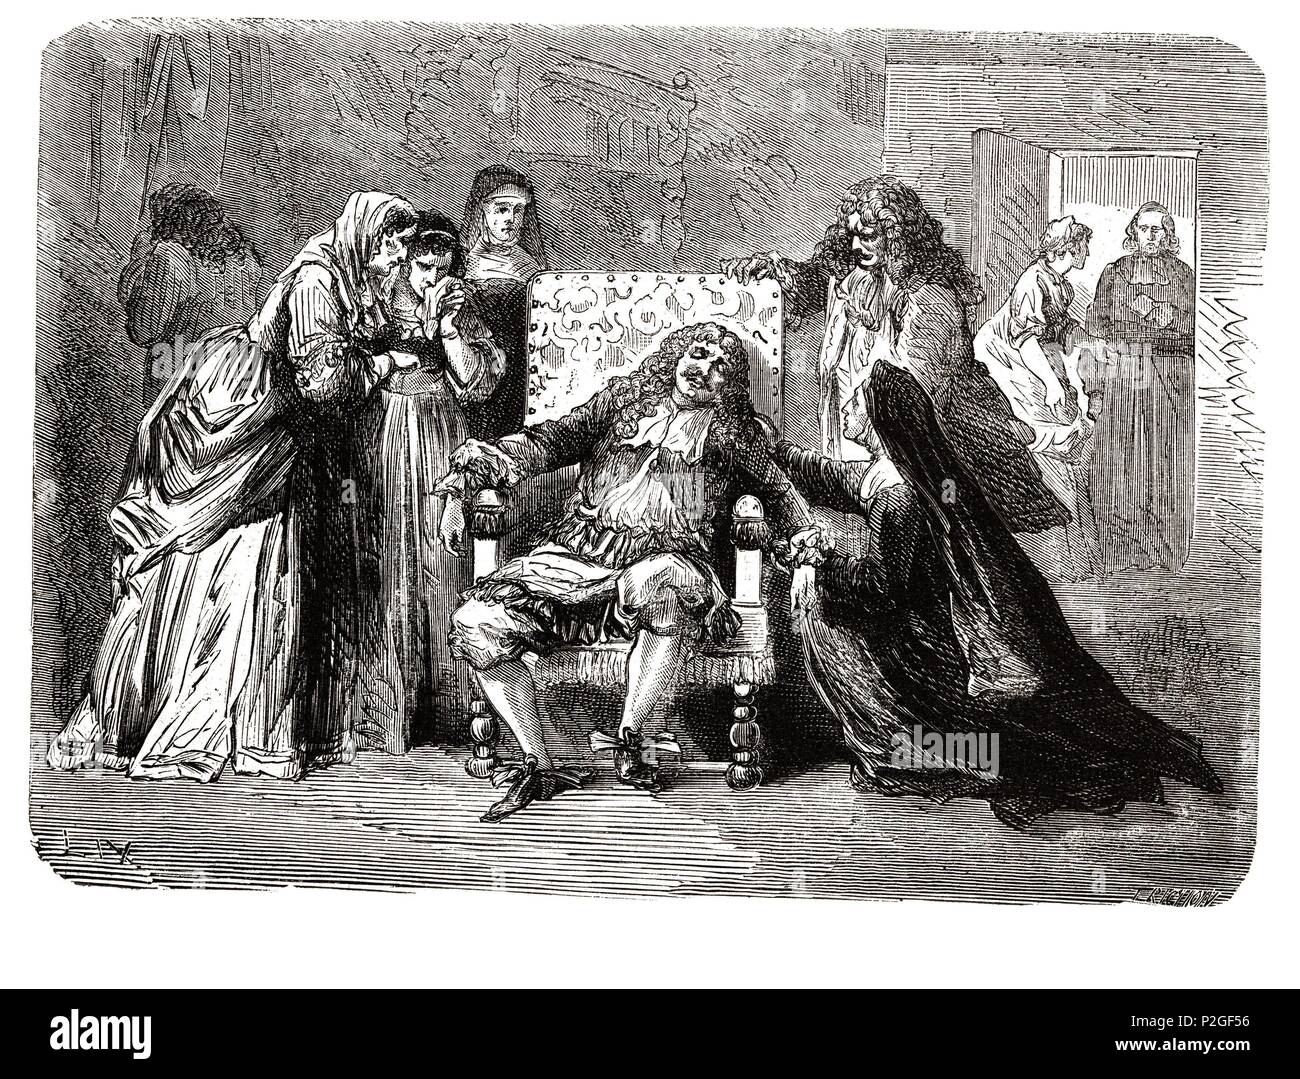 Jean Baptiste Poquelin, llamado 'Molière' (1622-1673). Dramaturgo y actor francés. Murió en plena representación de la comedia 'El Enfermo Imaginario'. Grabado de 1866. Stock Photo